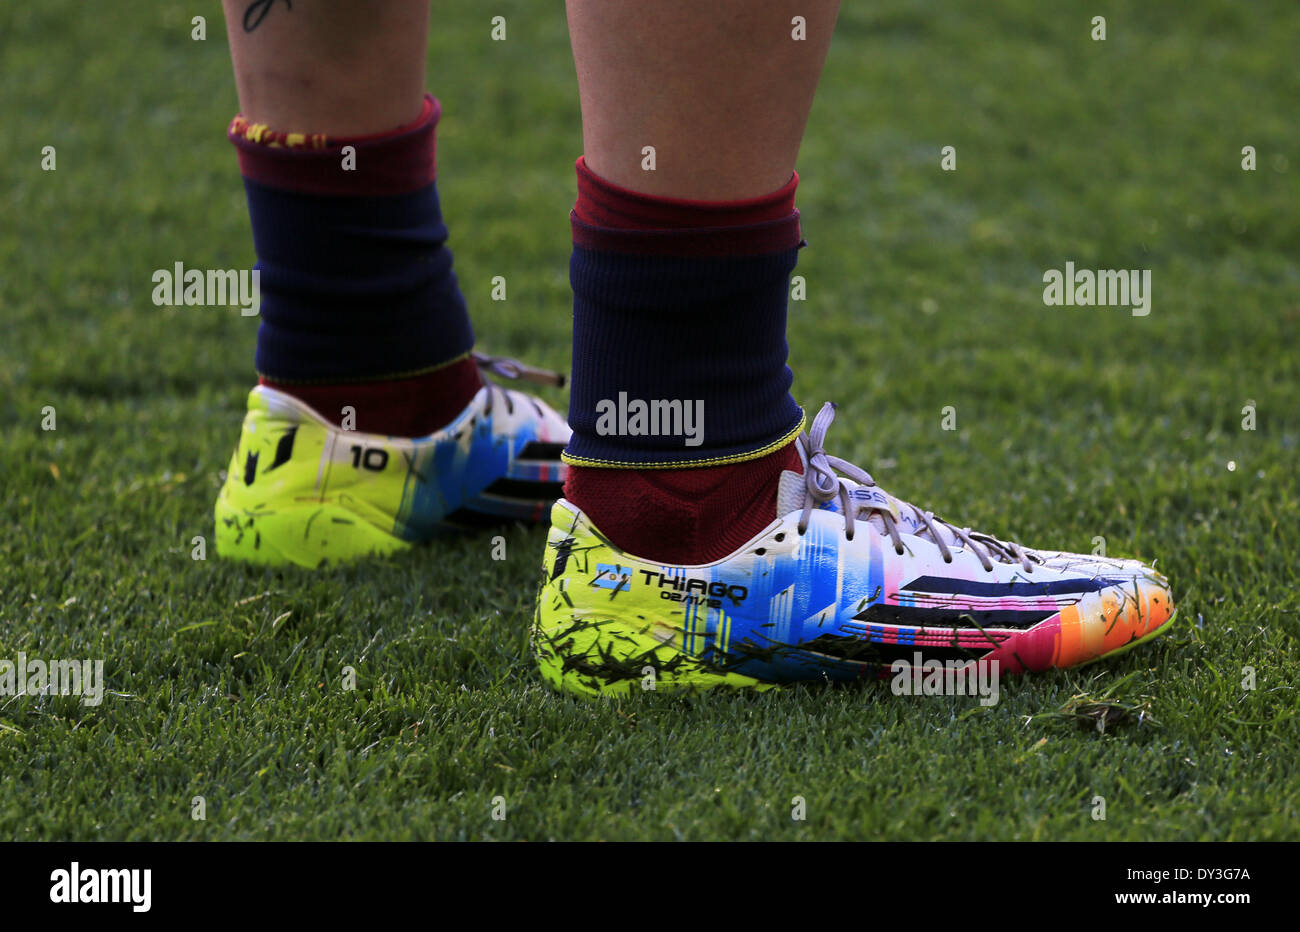 Barcelona, España. 5 abr, 2014. Los zapatos de Leo Messi en el partido  entre el FC Barcelona y el Betis en la semana 32 de la liga española, jugó  en el Camp